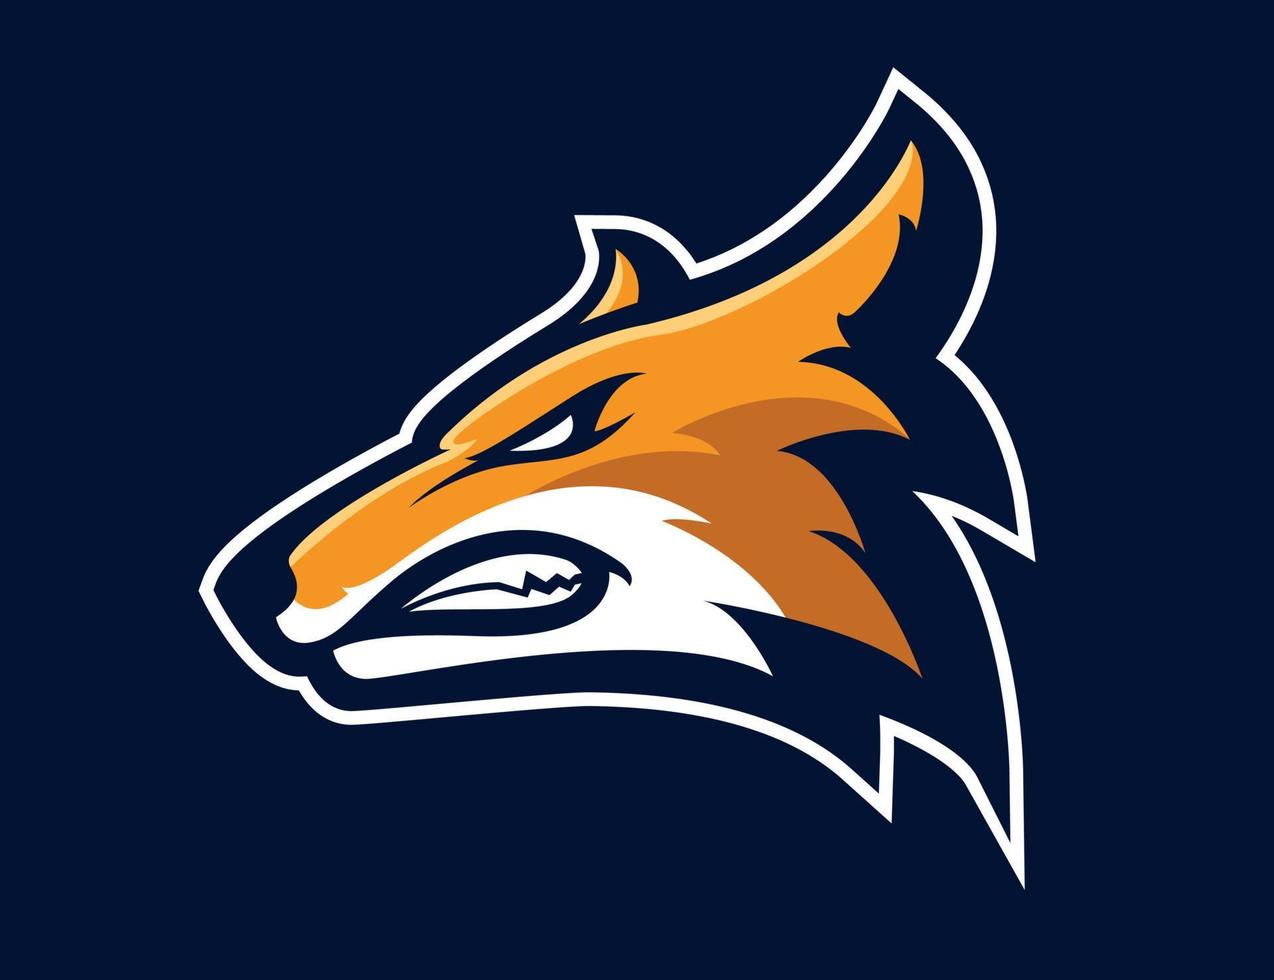 vos hoofd illustratie voor logo resource vector